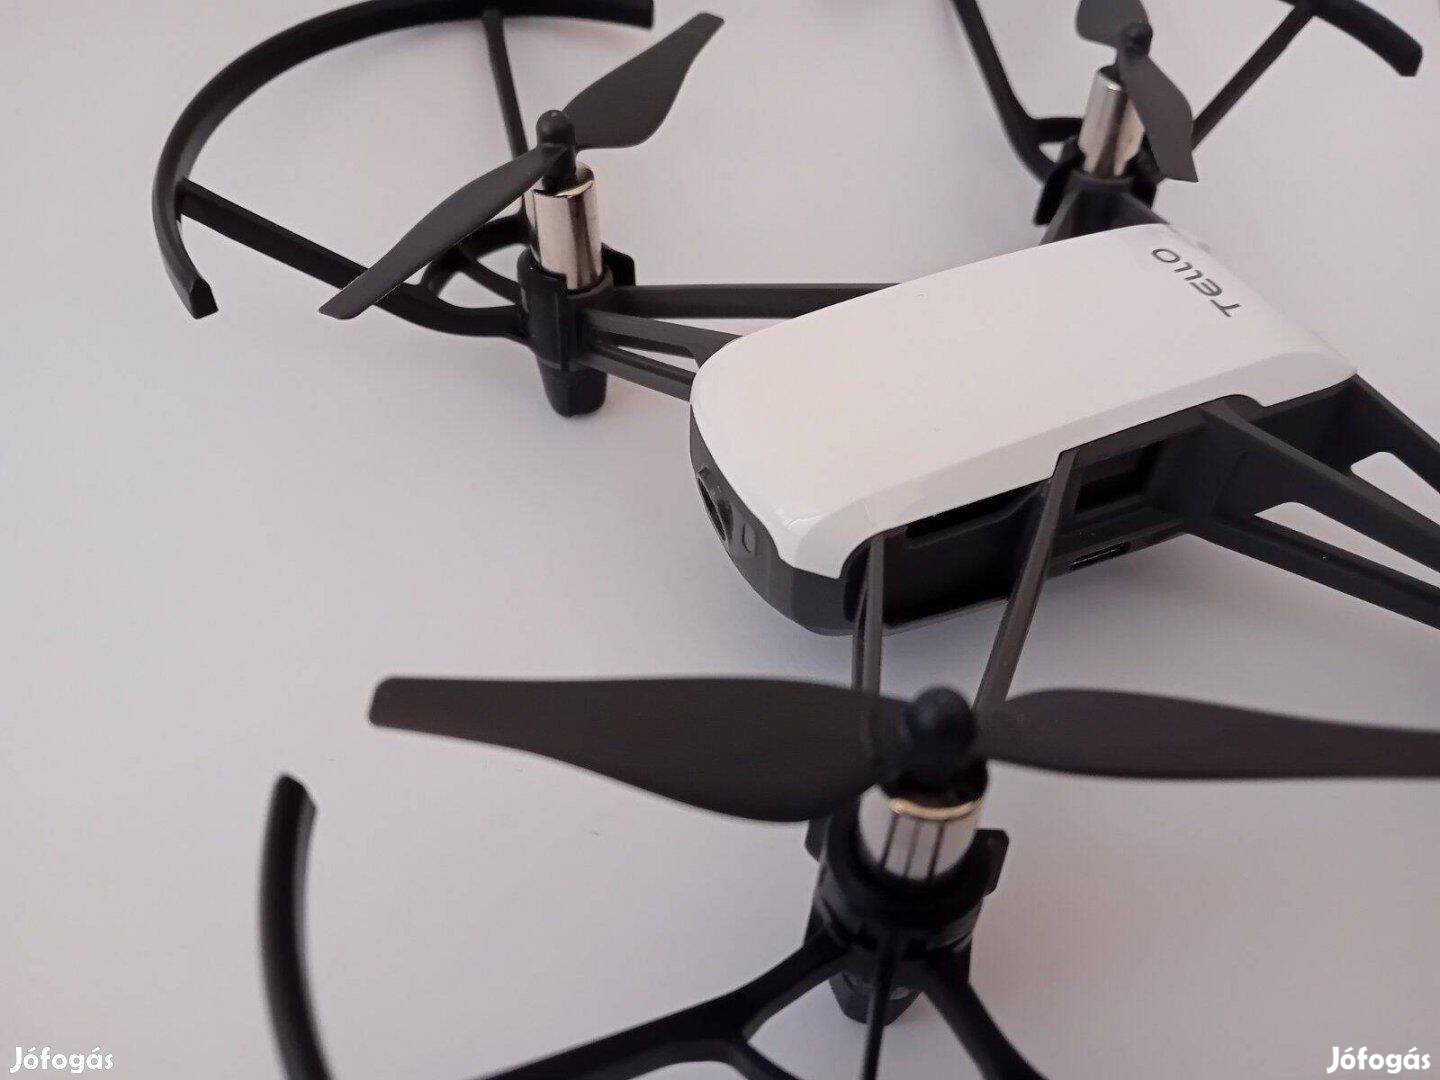 Keresek: DJI Tello drónt és hozzá való alkatrészt keresek